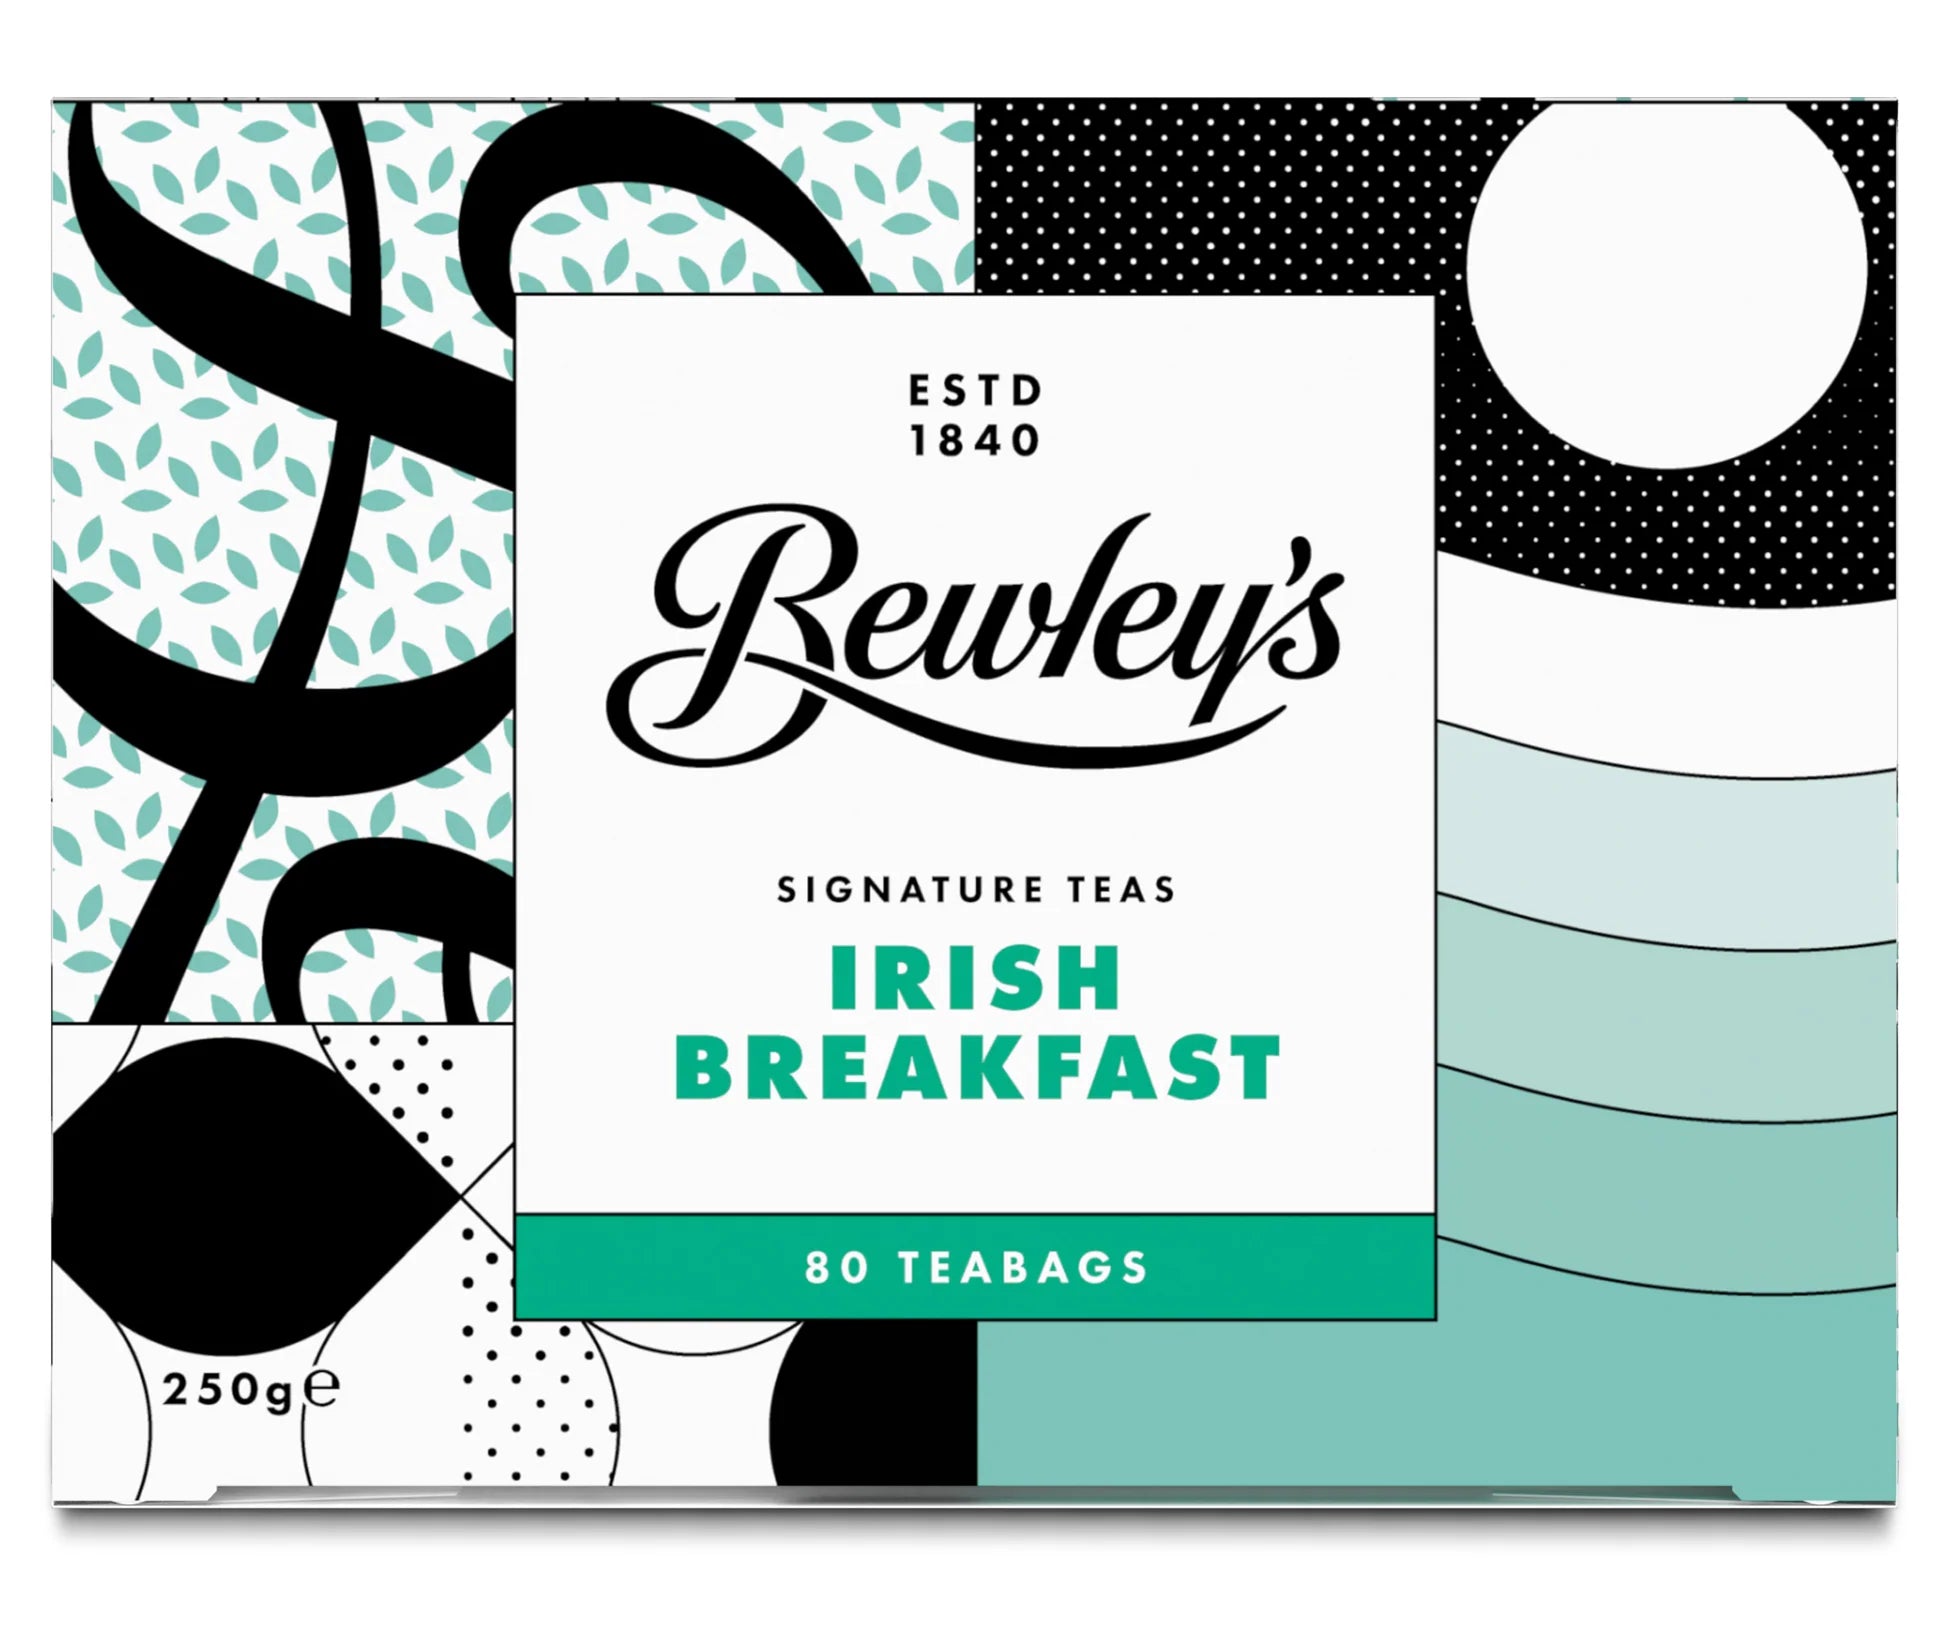 Bewleys Irish Breakfast tea